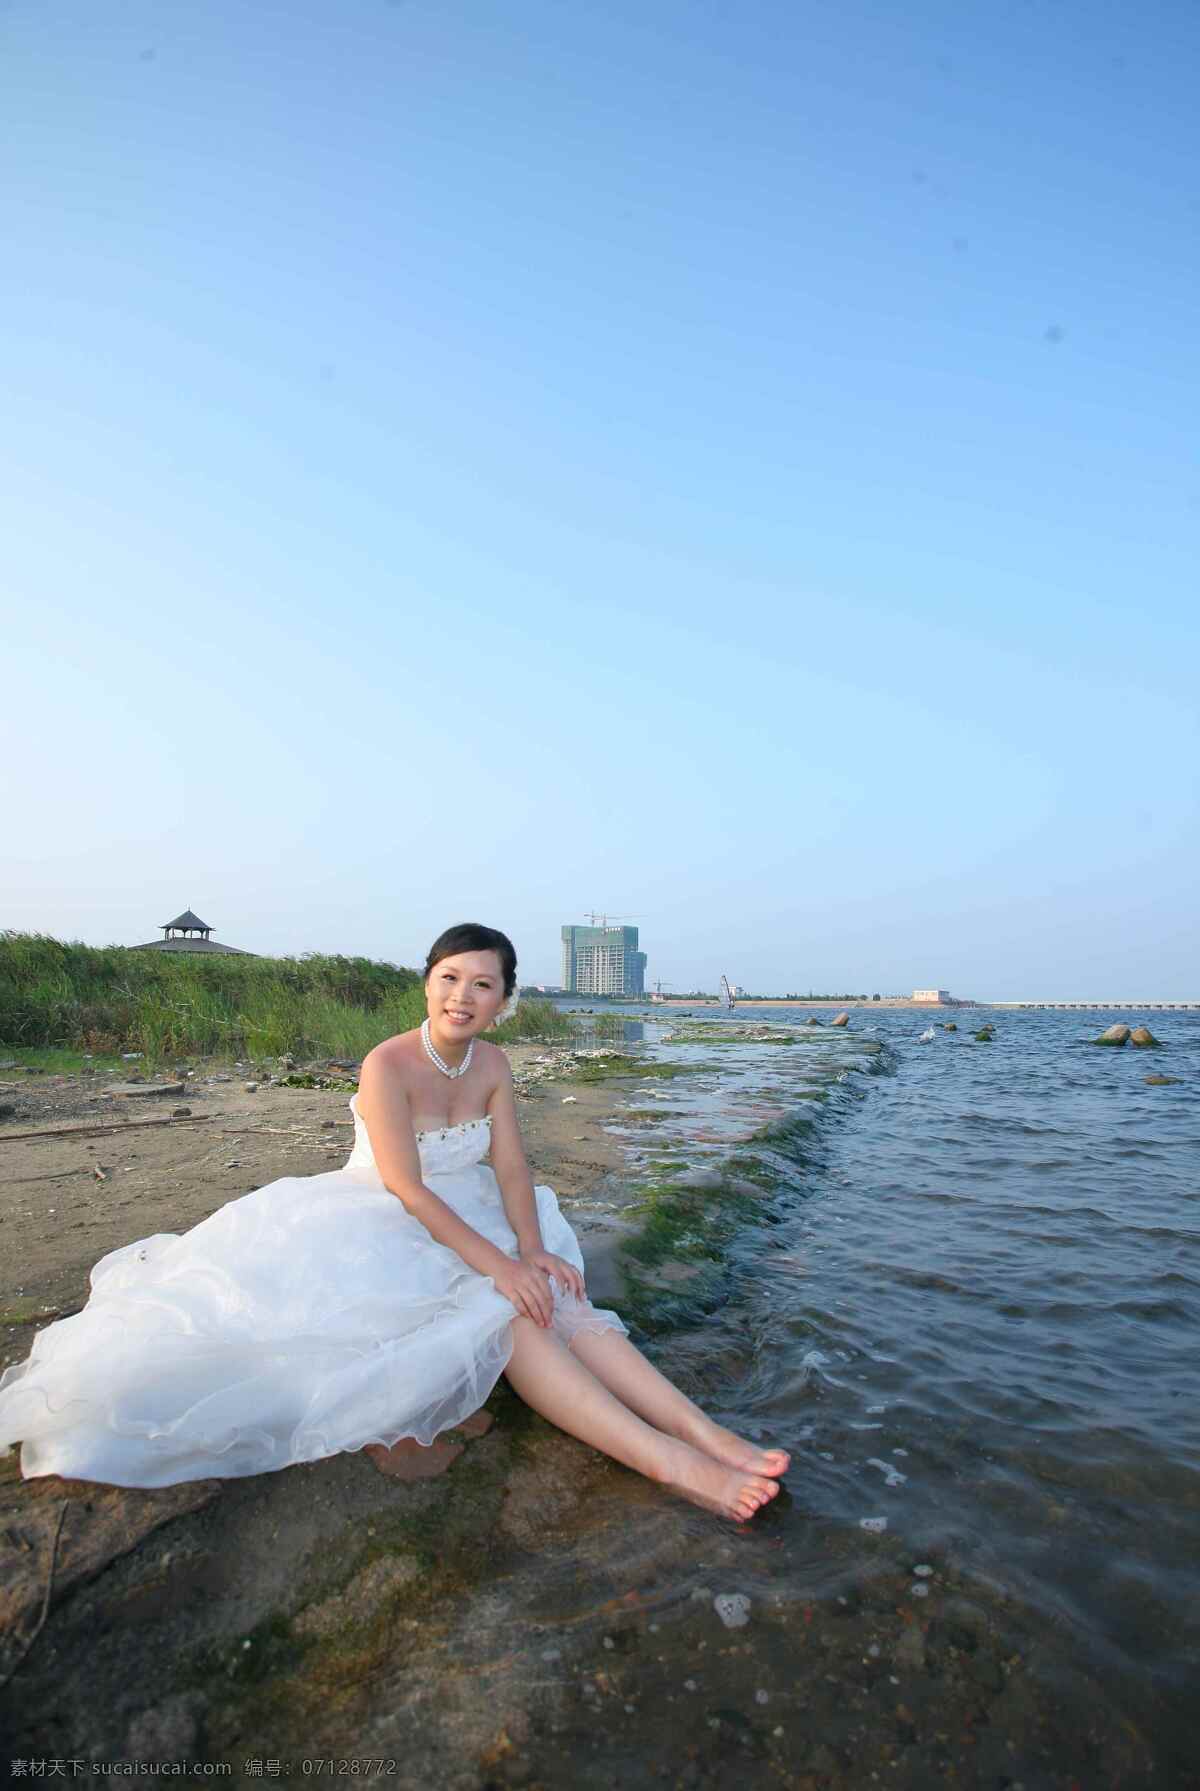 婚纱照 婚纱 美女 浪漫 时尚 甜蜜 白色长裙 礼服 海边 戏水 婚纱摄影 人物摄影 人物图库